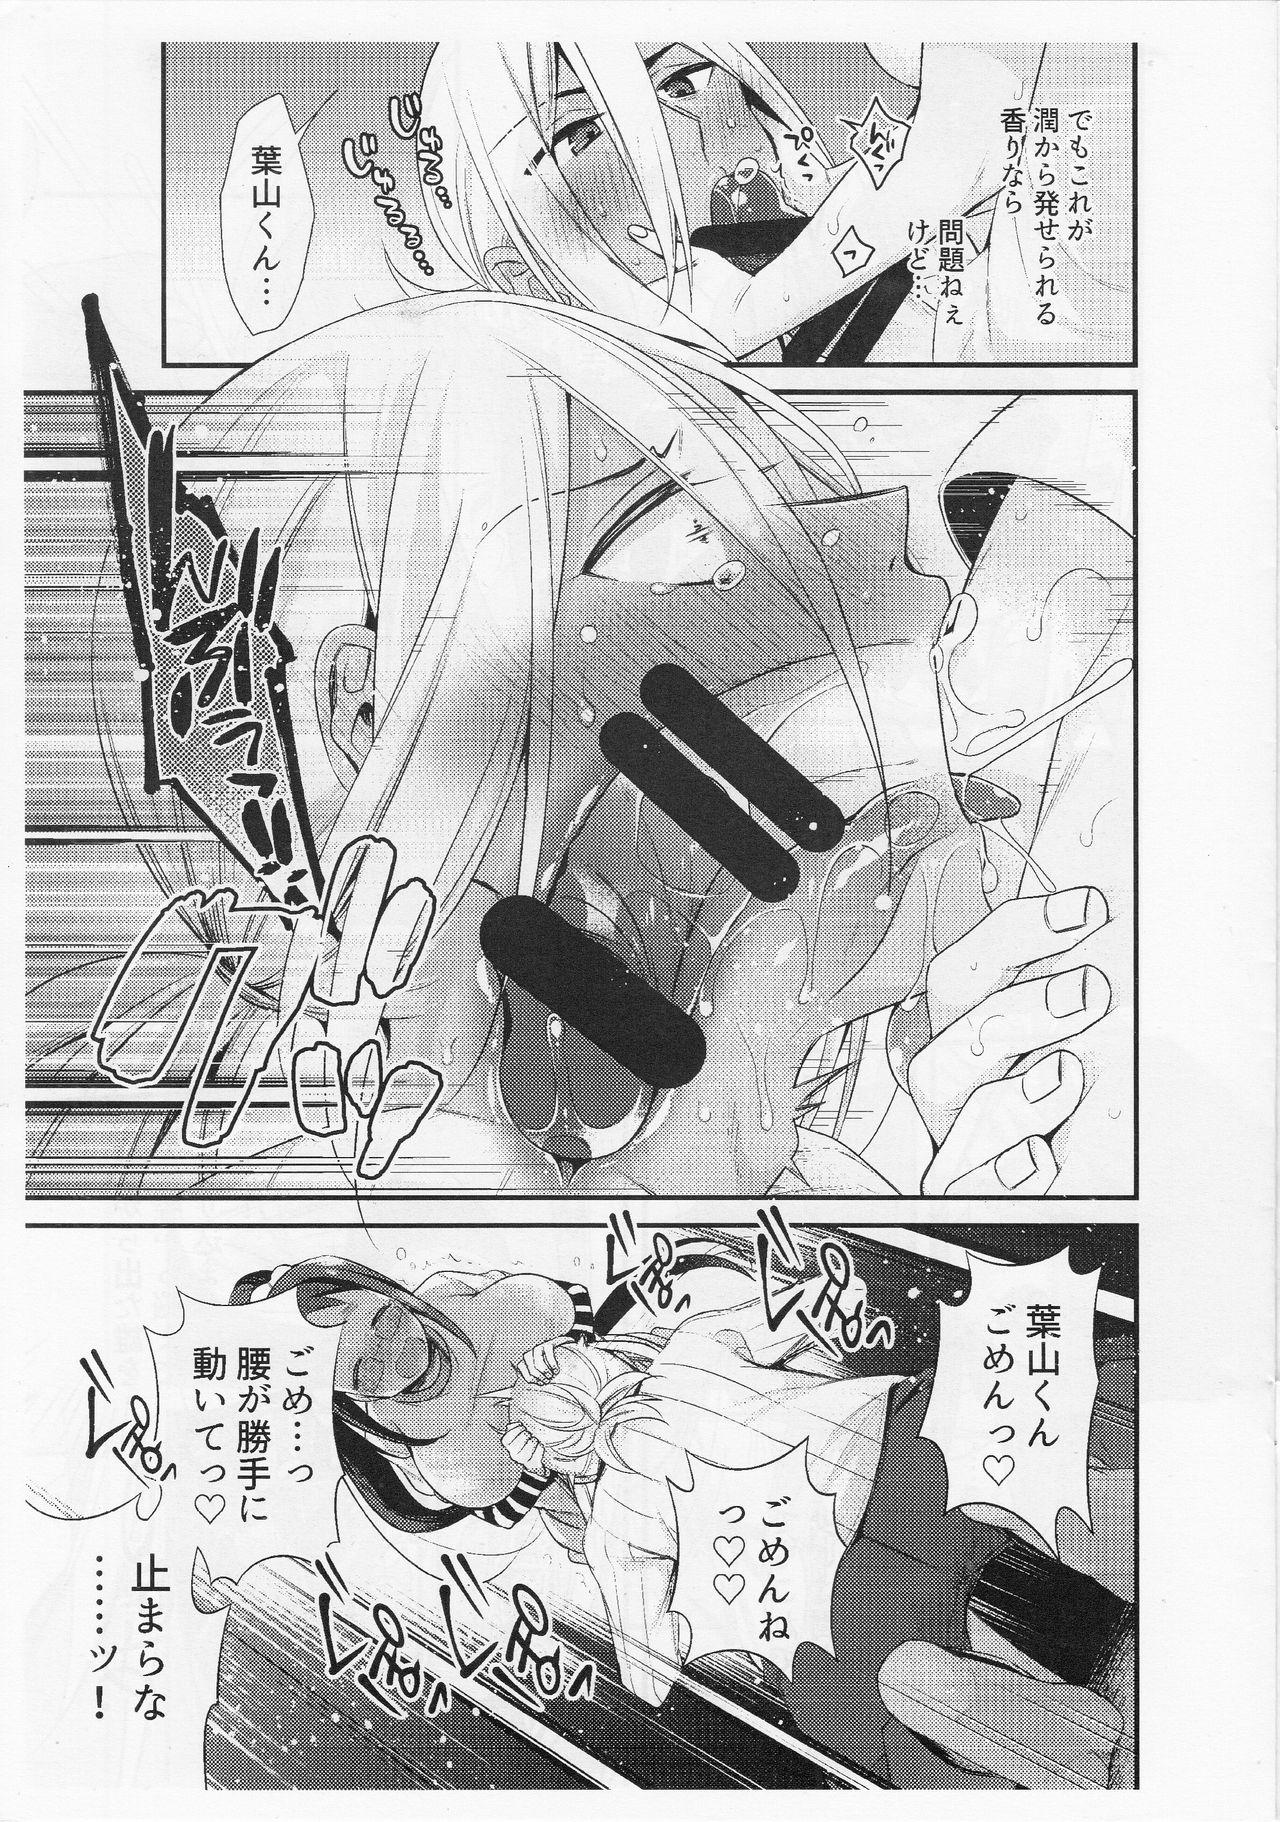 Moaning 【コピー誌】助けて!葉山くん - Shokugeki no soma Van - Page 5